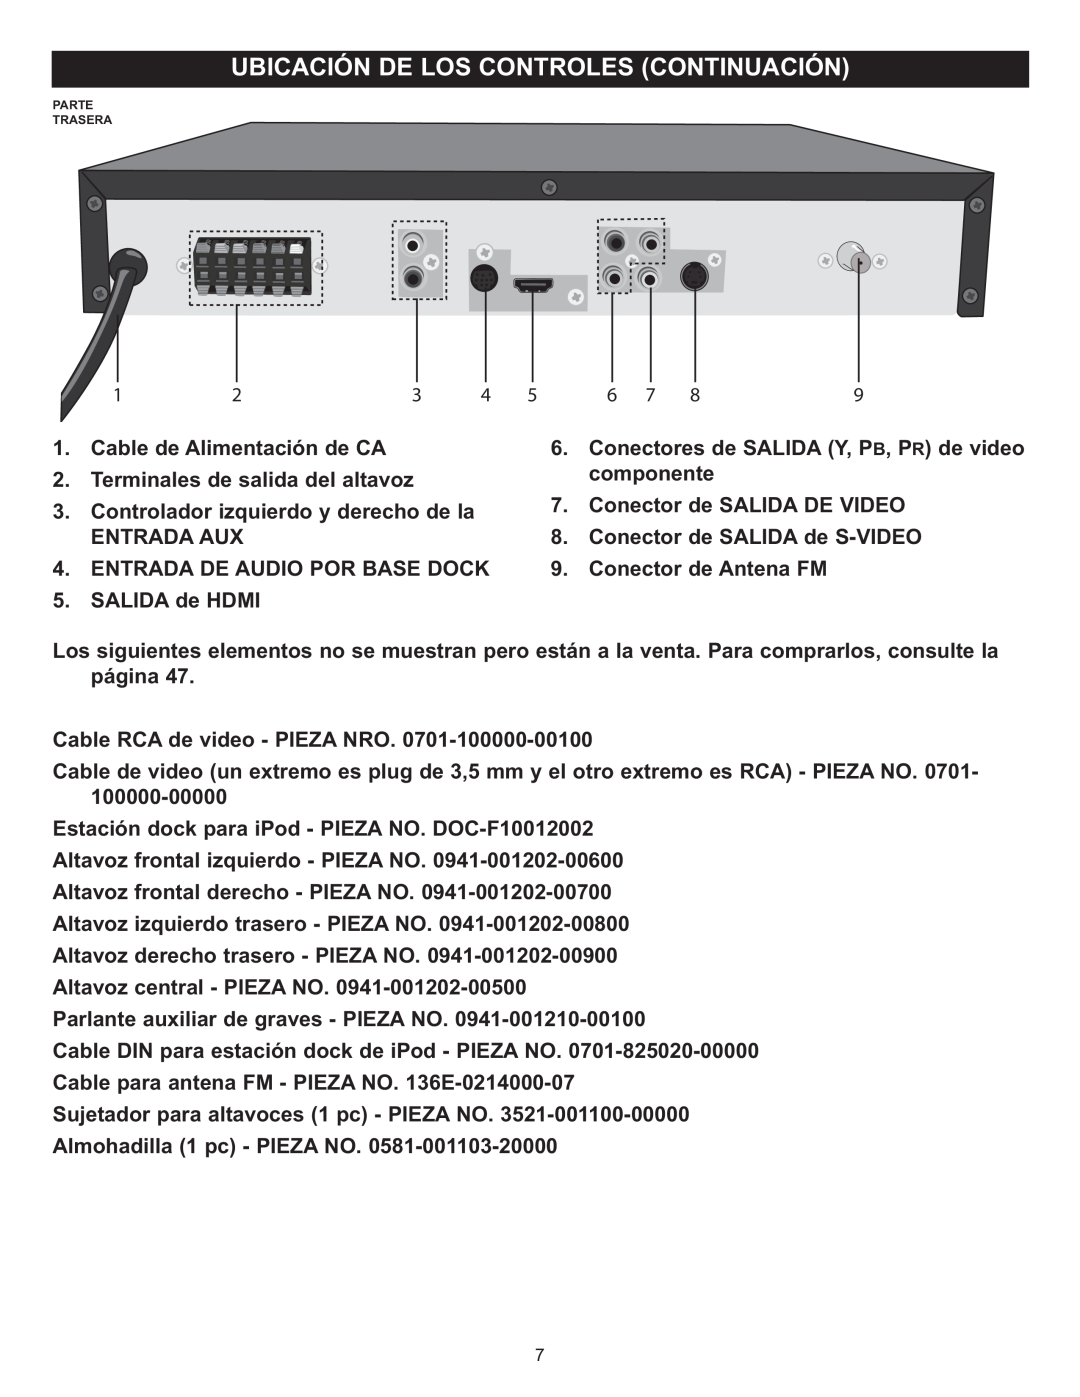 Memorex MIHT5005 Cable de Alimentación de CA, Conectores de SALIDA Y, PB, PR de video, Terminales de salida del altavoz 